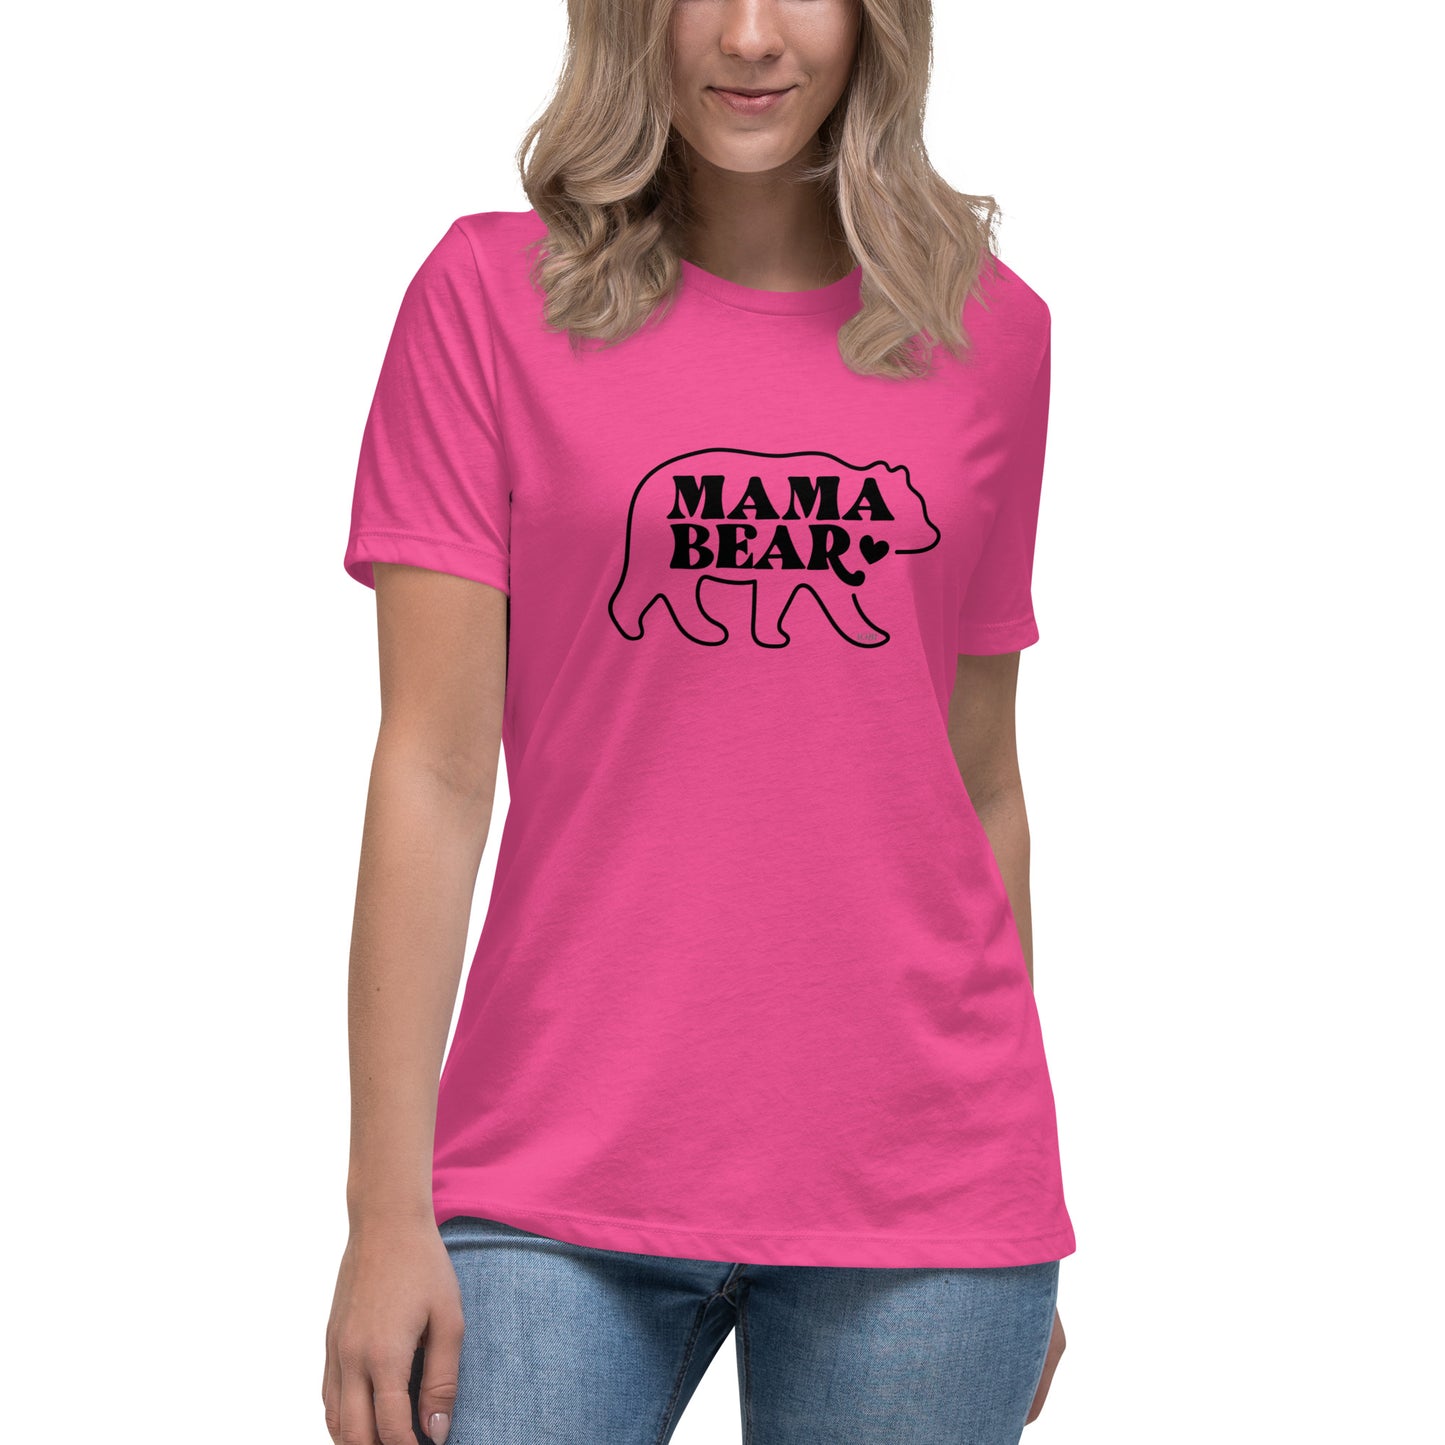 Women's Relaxed Soft & Smooth Premium Quality T-Shirt Mama Bear Design by IOBI Original Apparel